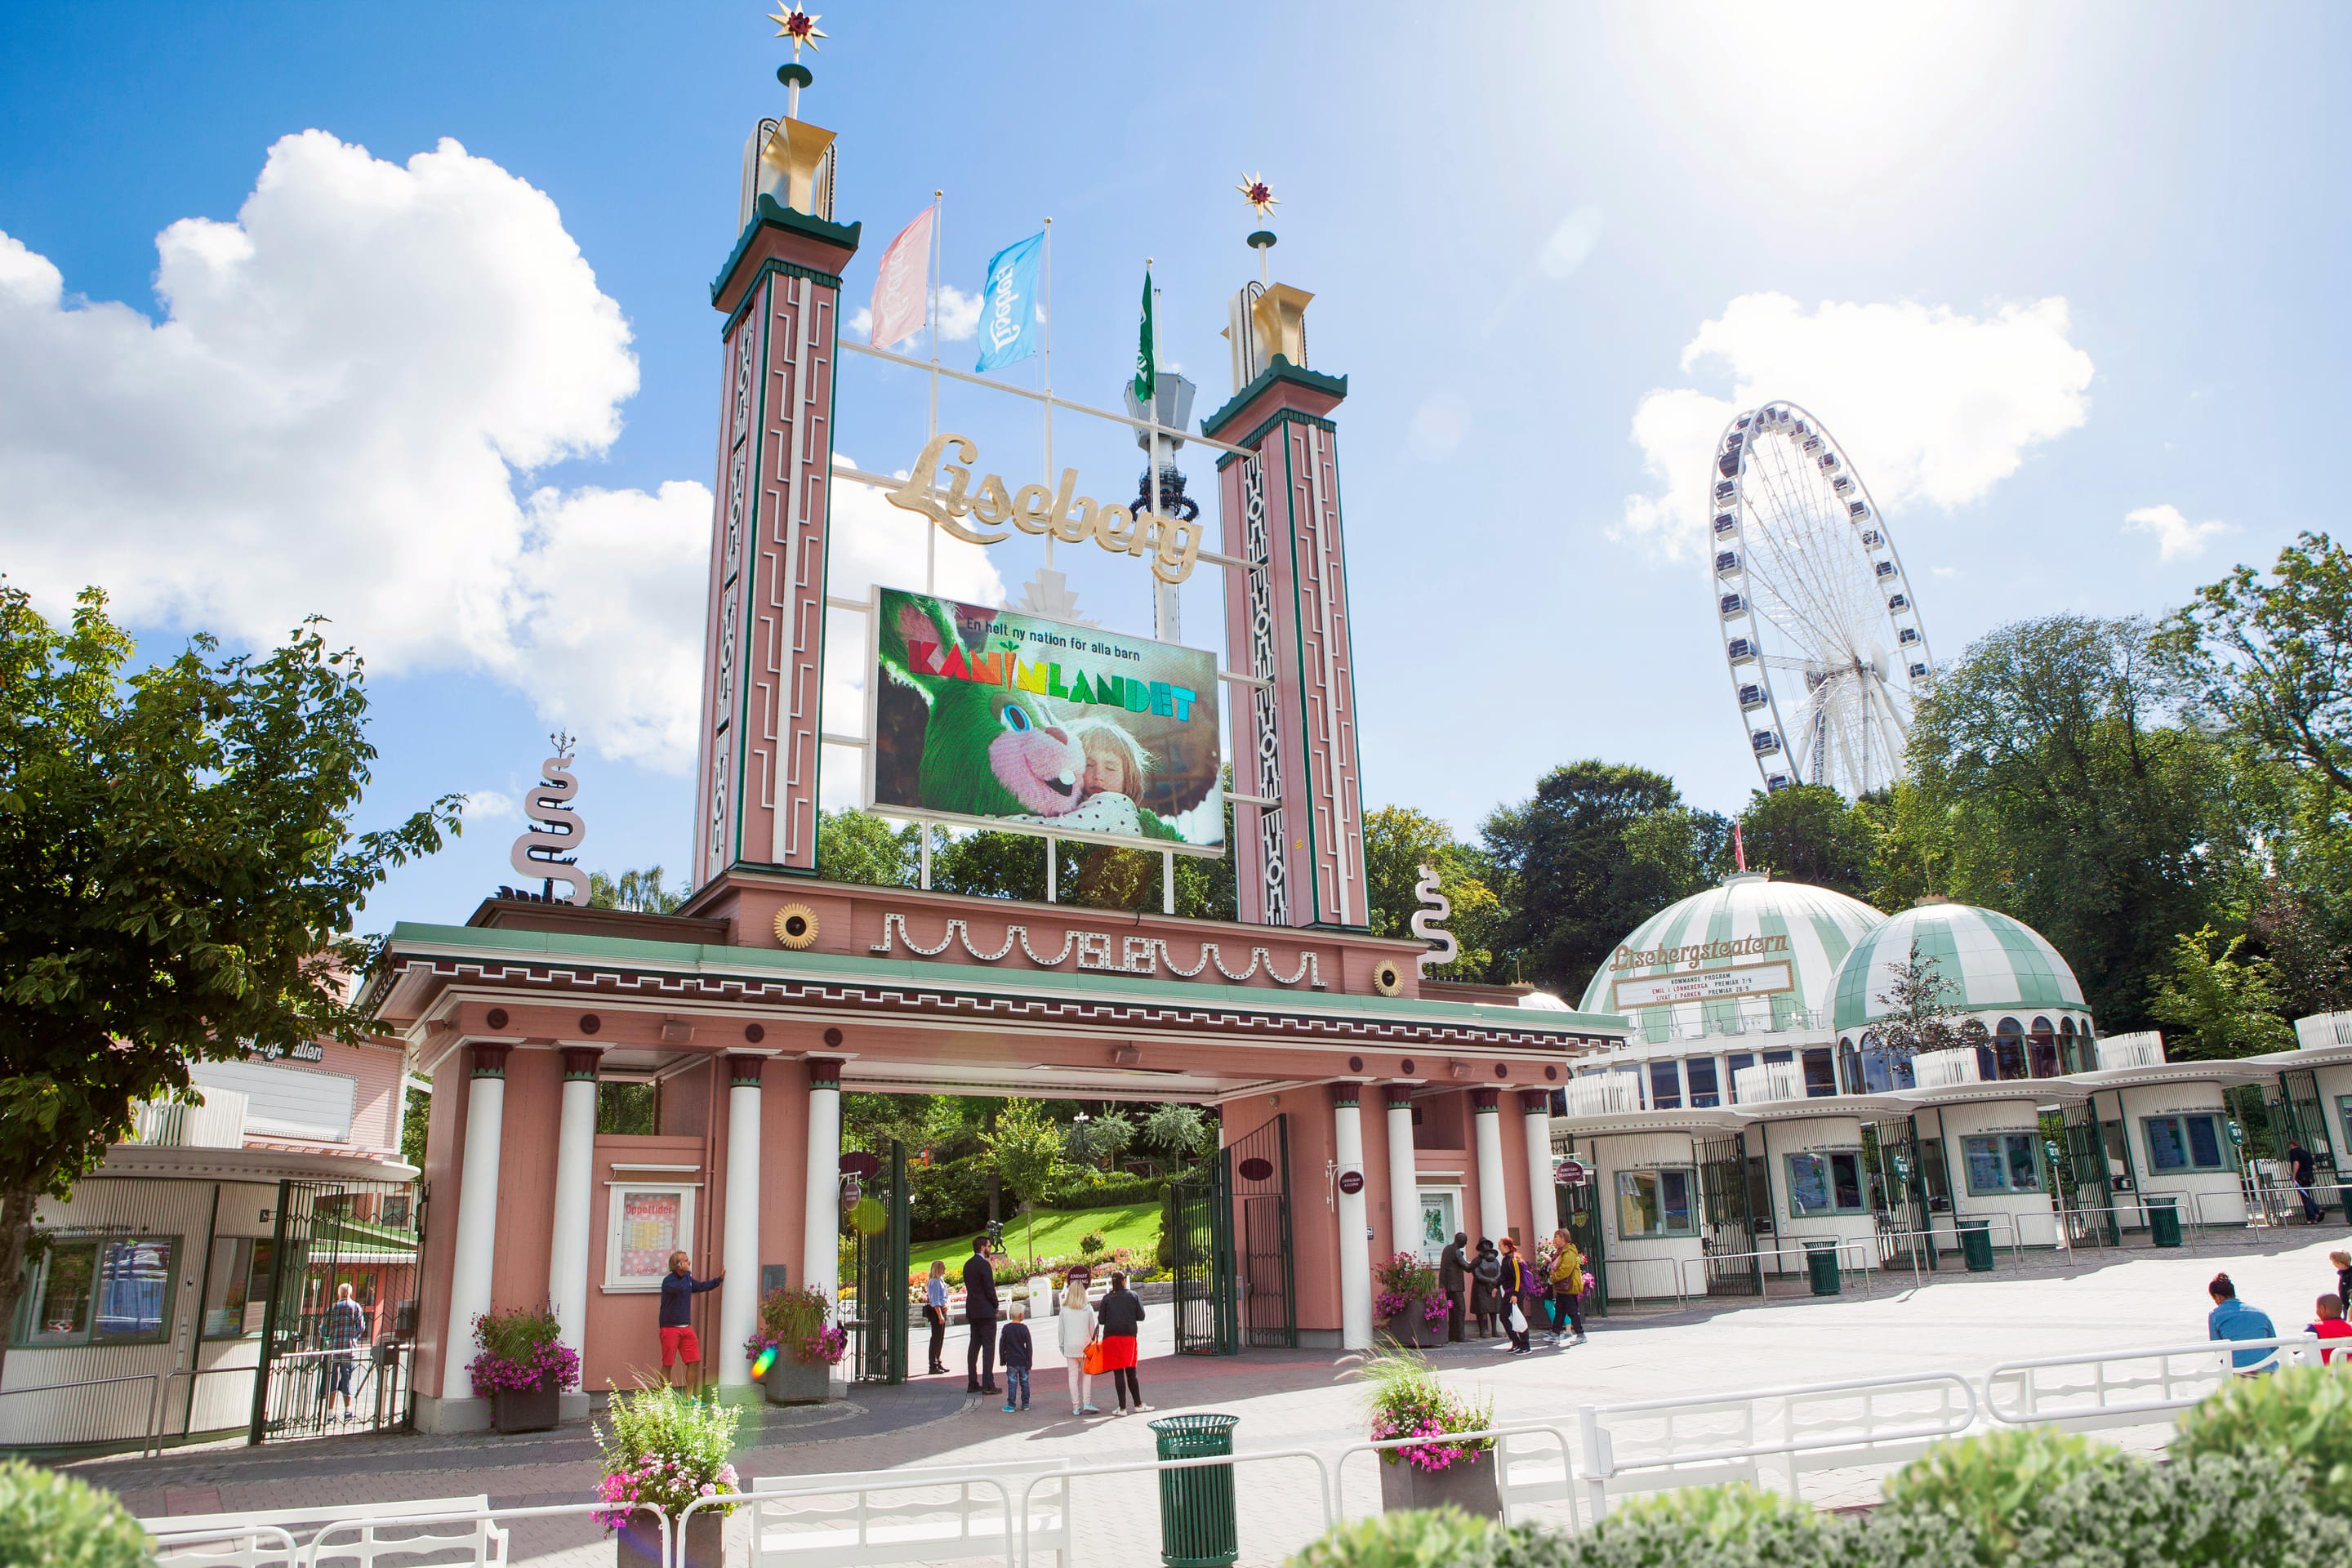 Liseberg Amusement Park Overview